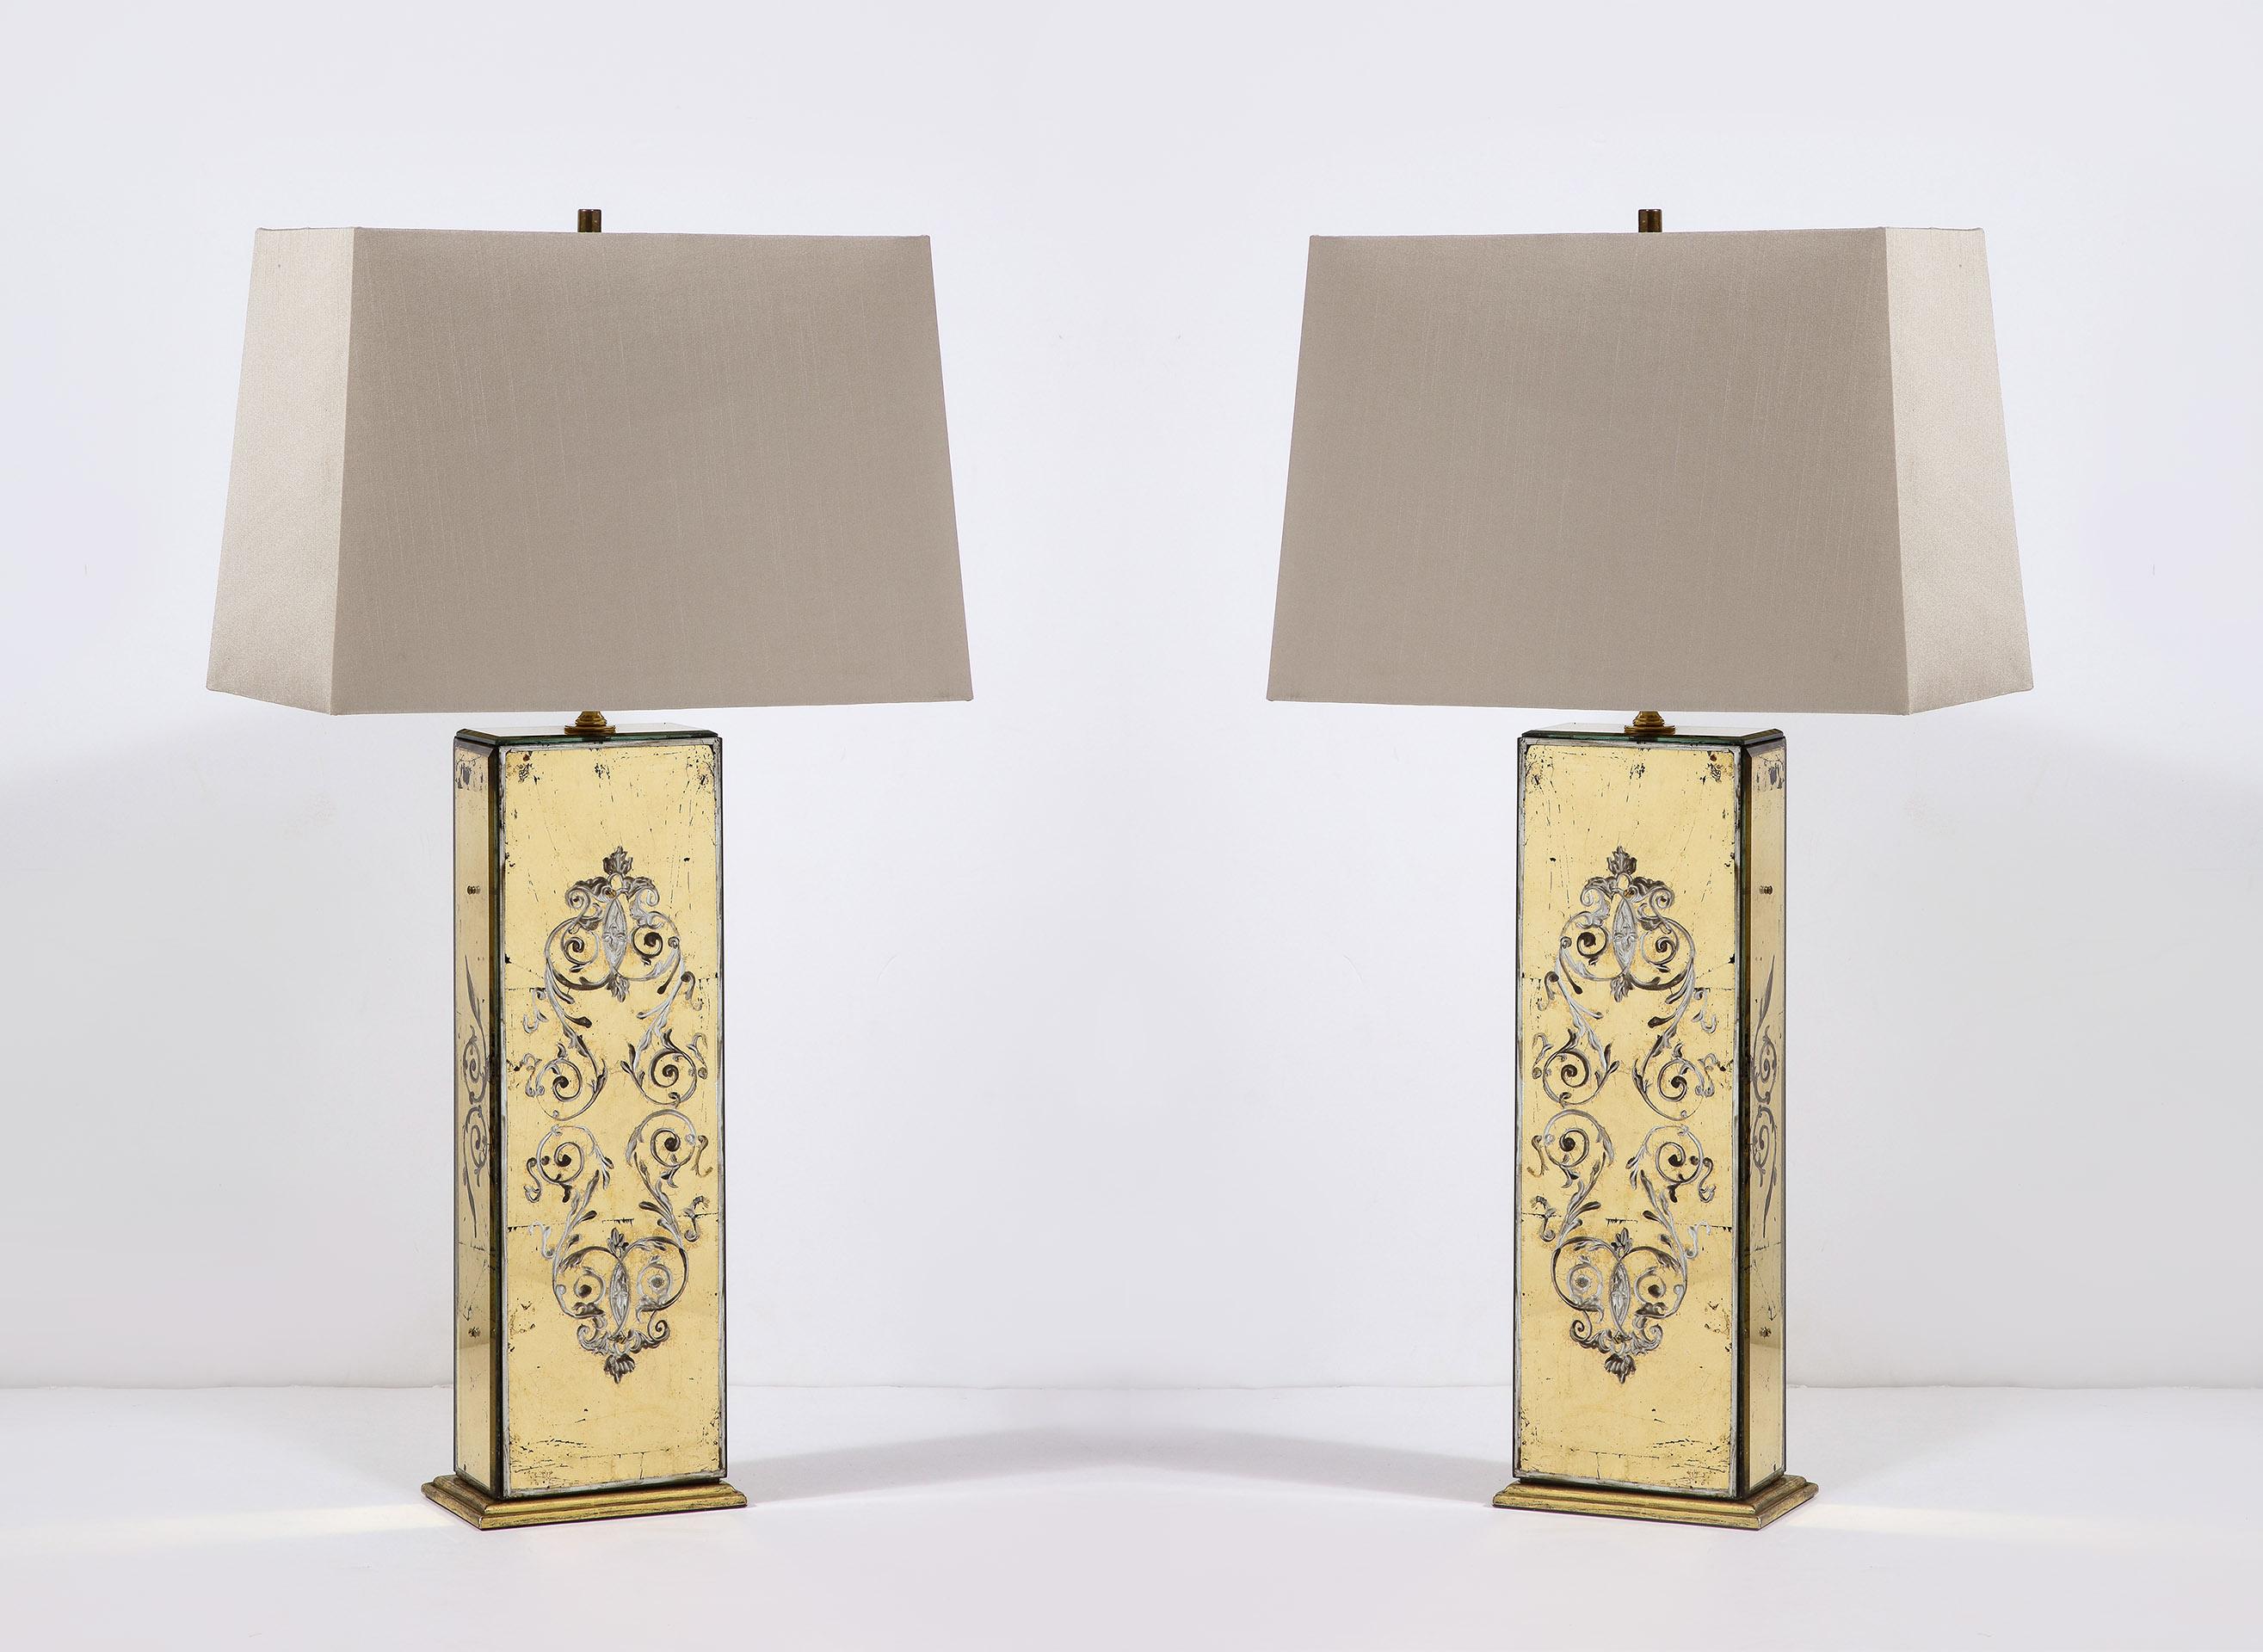 Jede Lampe ist an allen vier Seiten verspiegelt und mit einer vergoldeten und bemalten Eglomisé-Oberfläche verziert, montiert auf einem Sockel aus vergoldetem Holz
(Farbtöne werden verkauft wie sie sind)